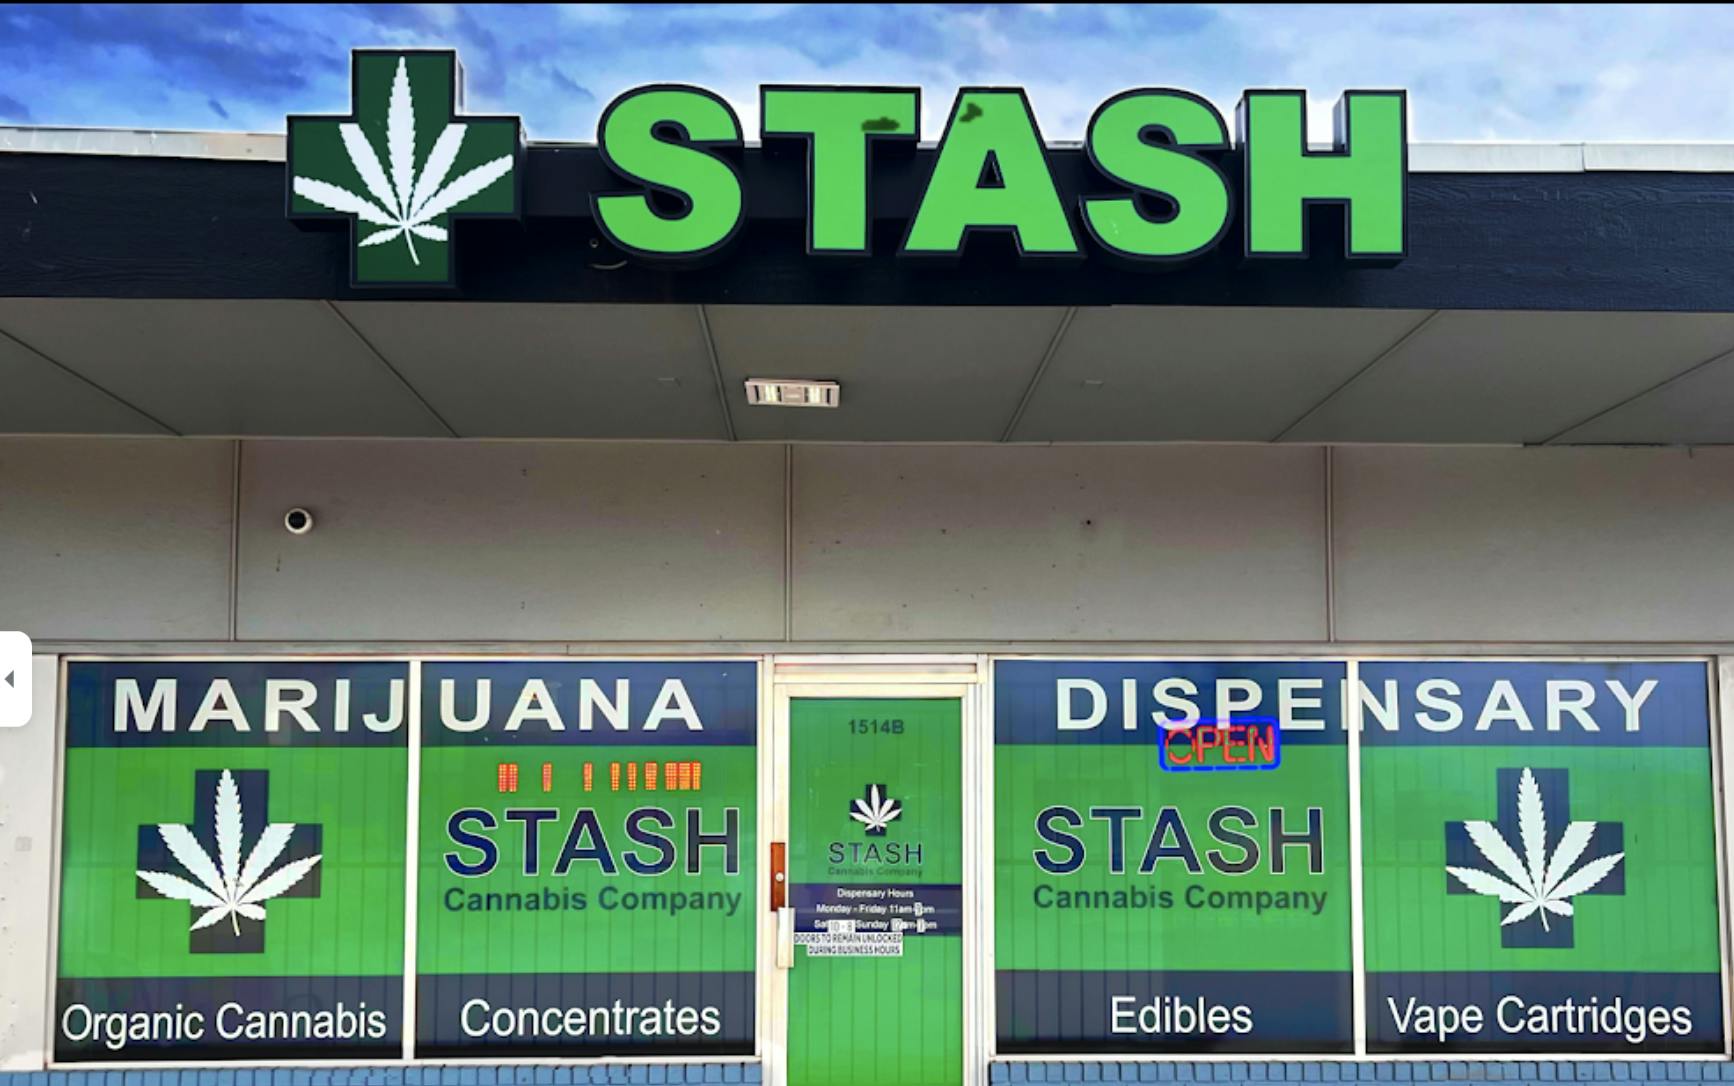 STASH Cannabis Company: Oklahoma City